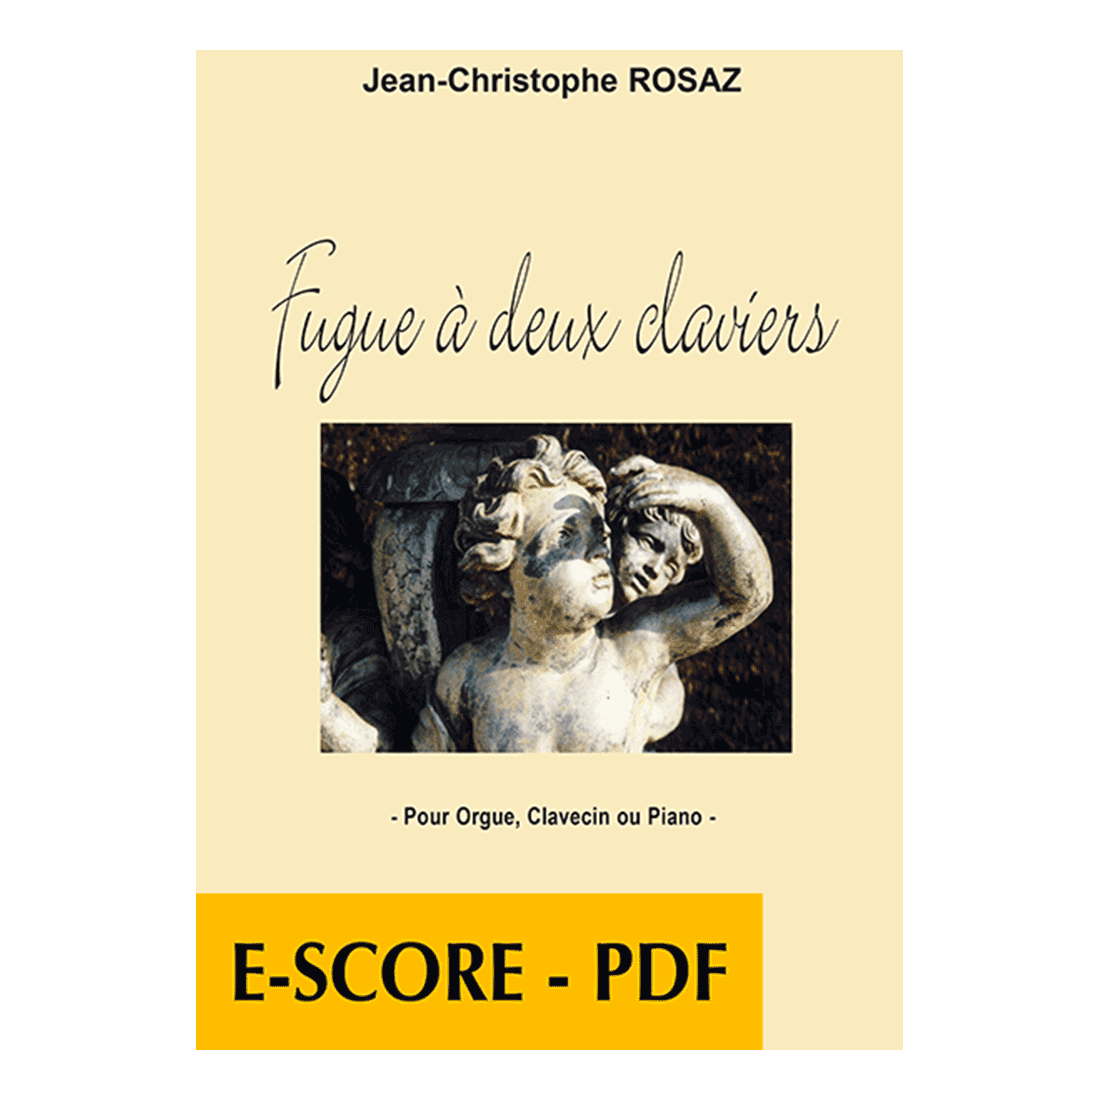 Fugue à deux claviers, for organ, harpsichord or 2 pianos - E-score PDF